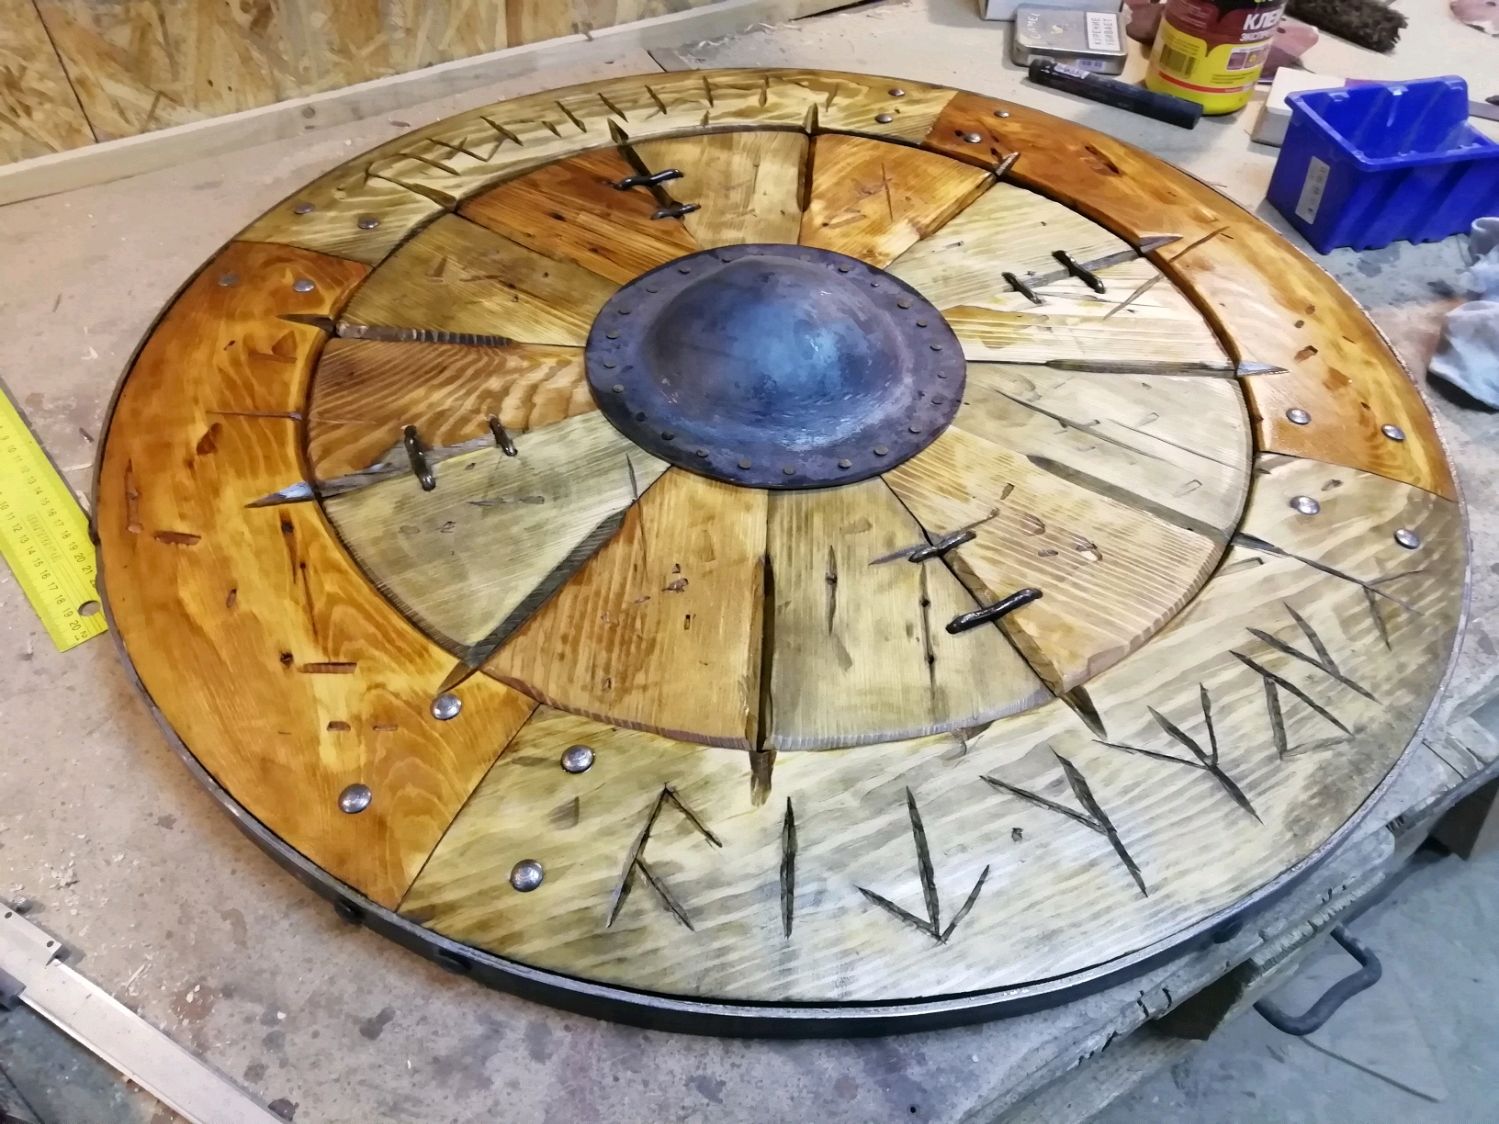 Щит круглый деревянный для стола